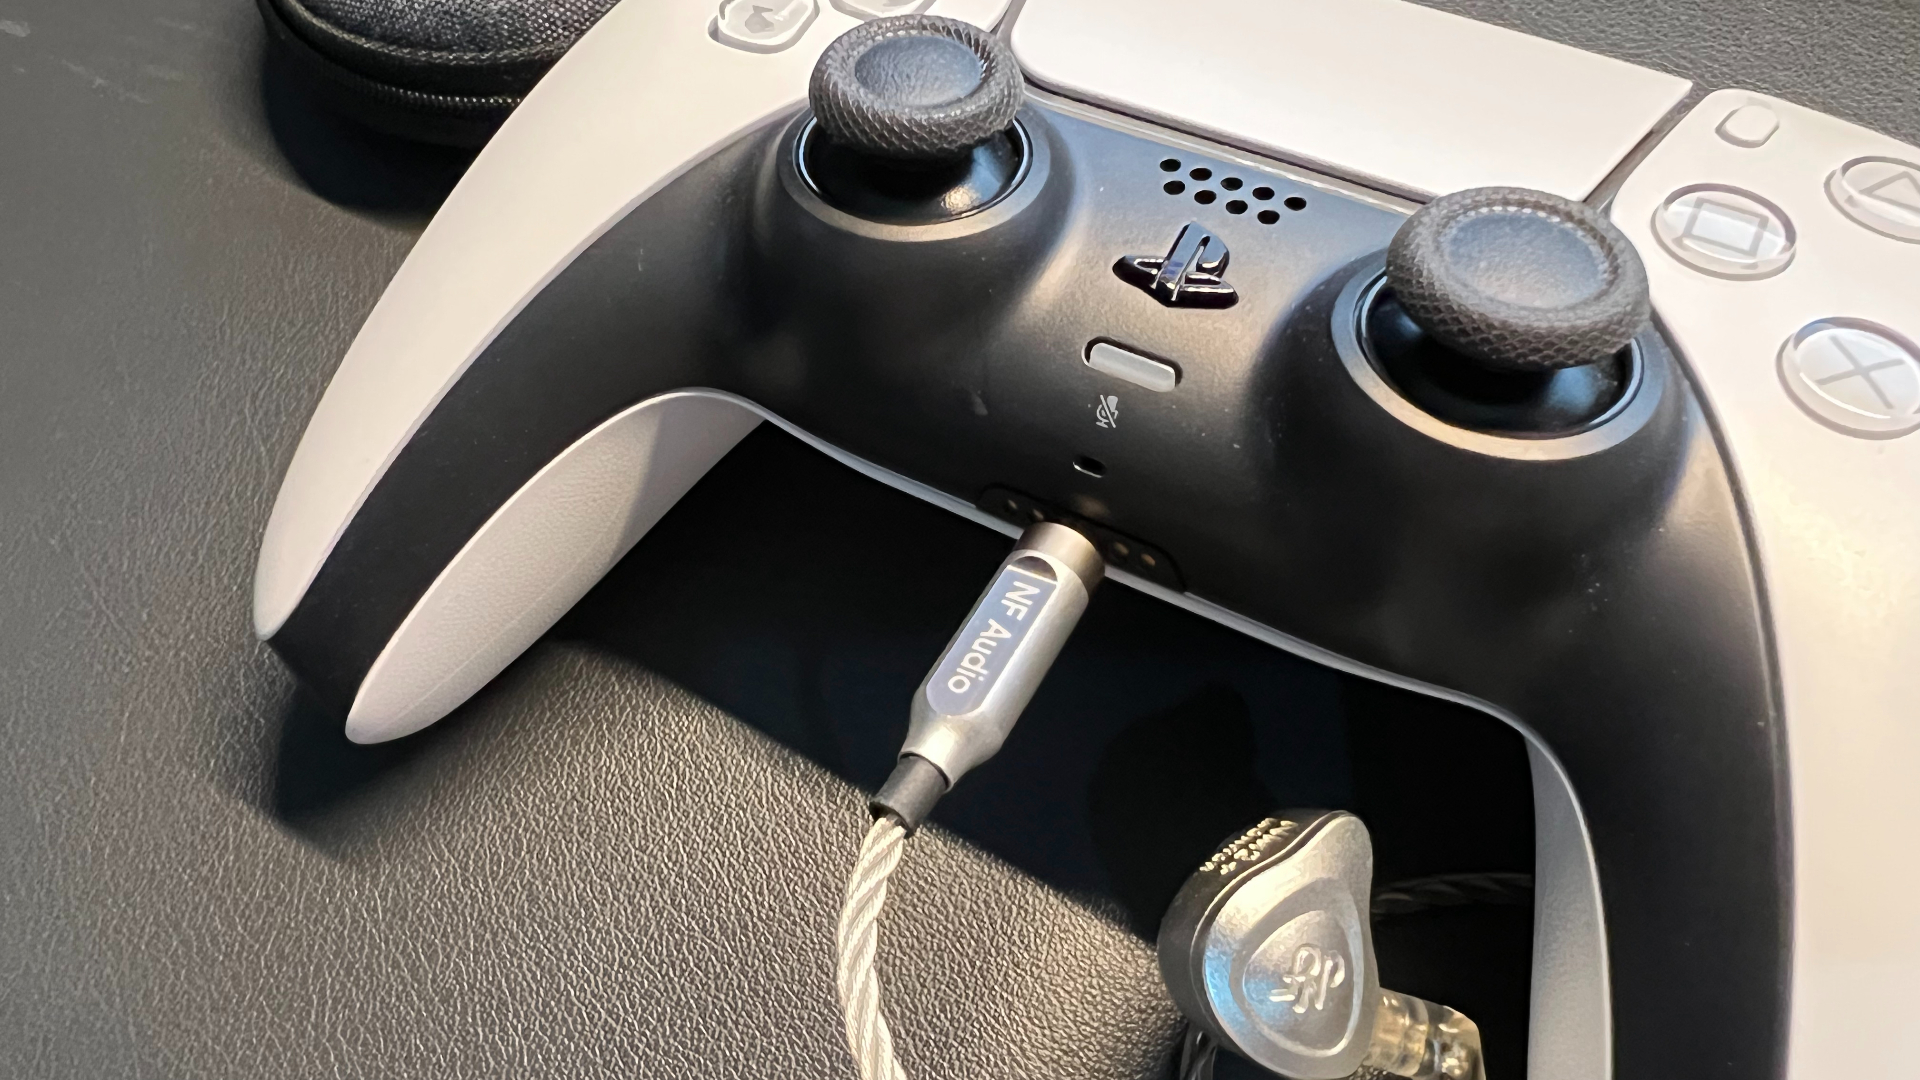   PS4/5手柄雖有耳機孔，主要為了聯機時隊友語音，是無線傳輸，在遊戲中聲音效果不佳